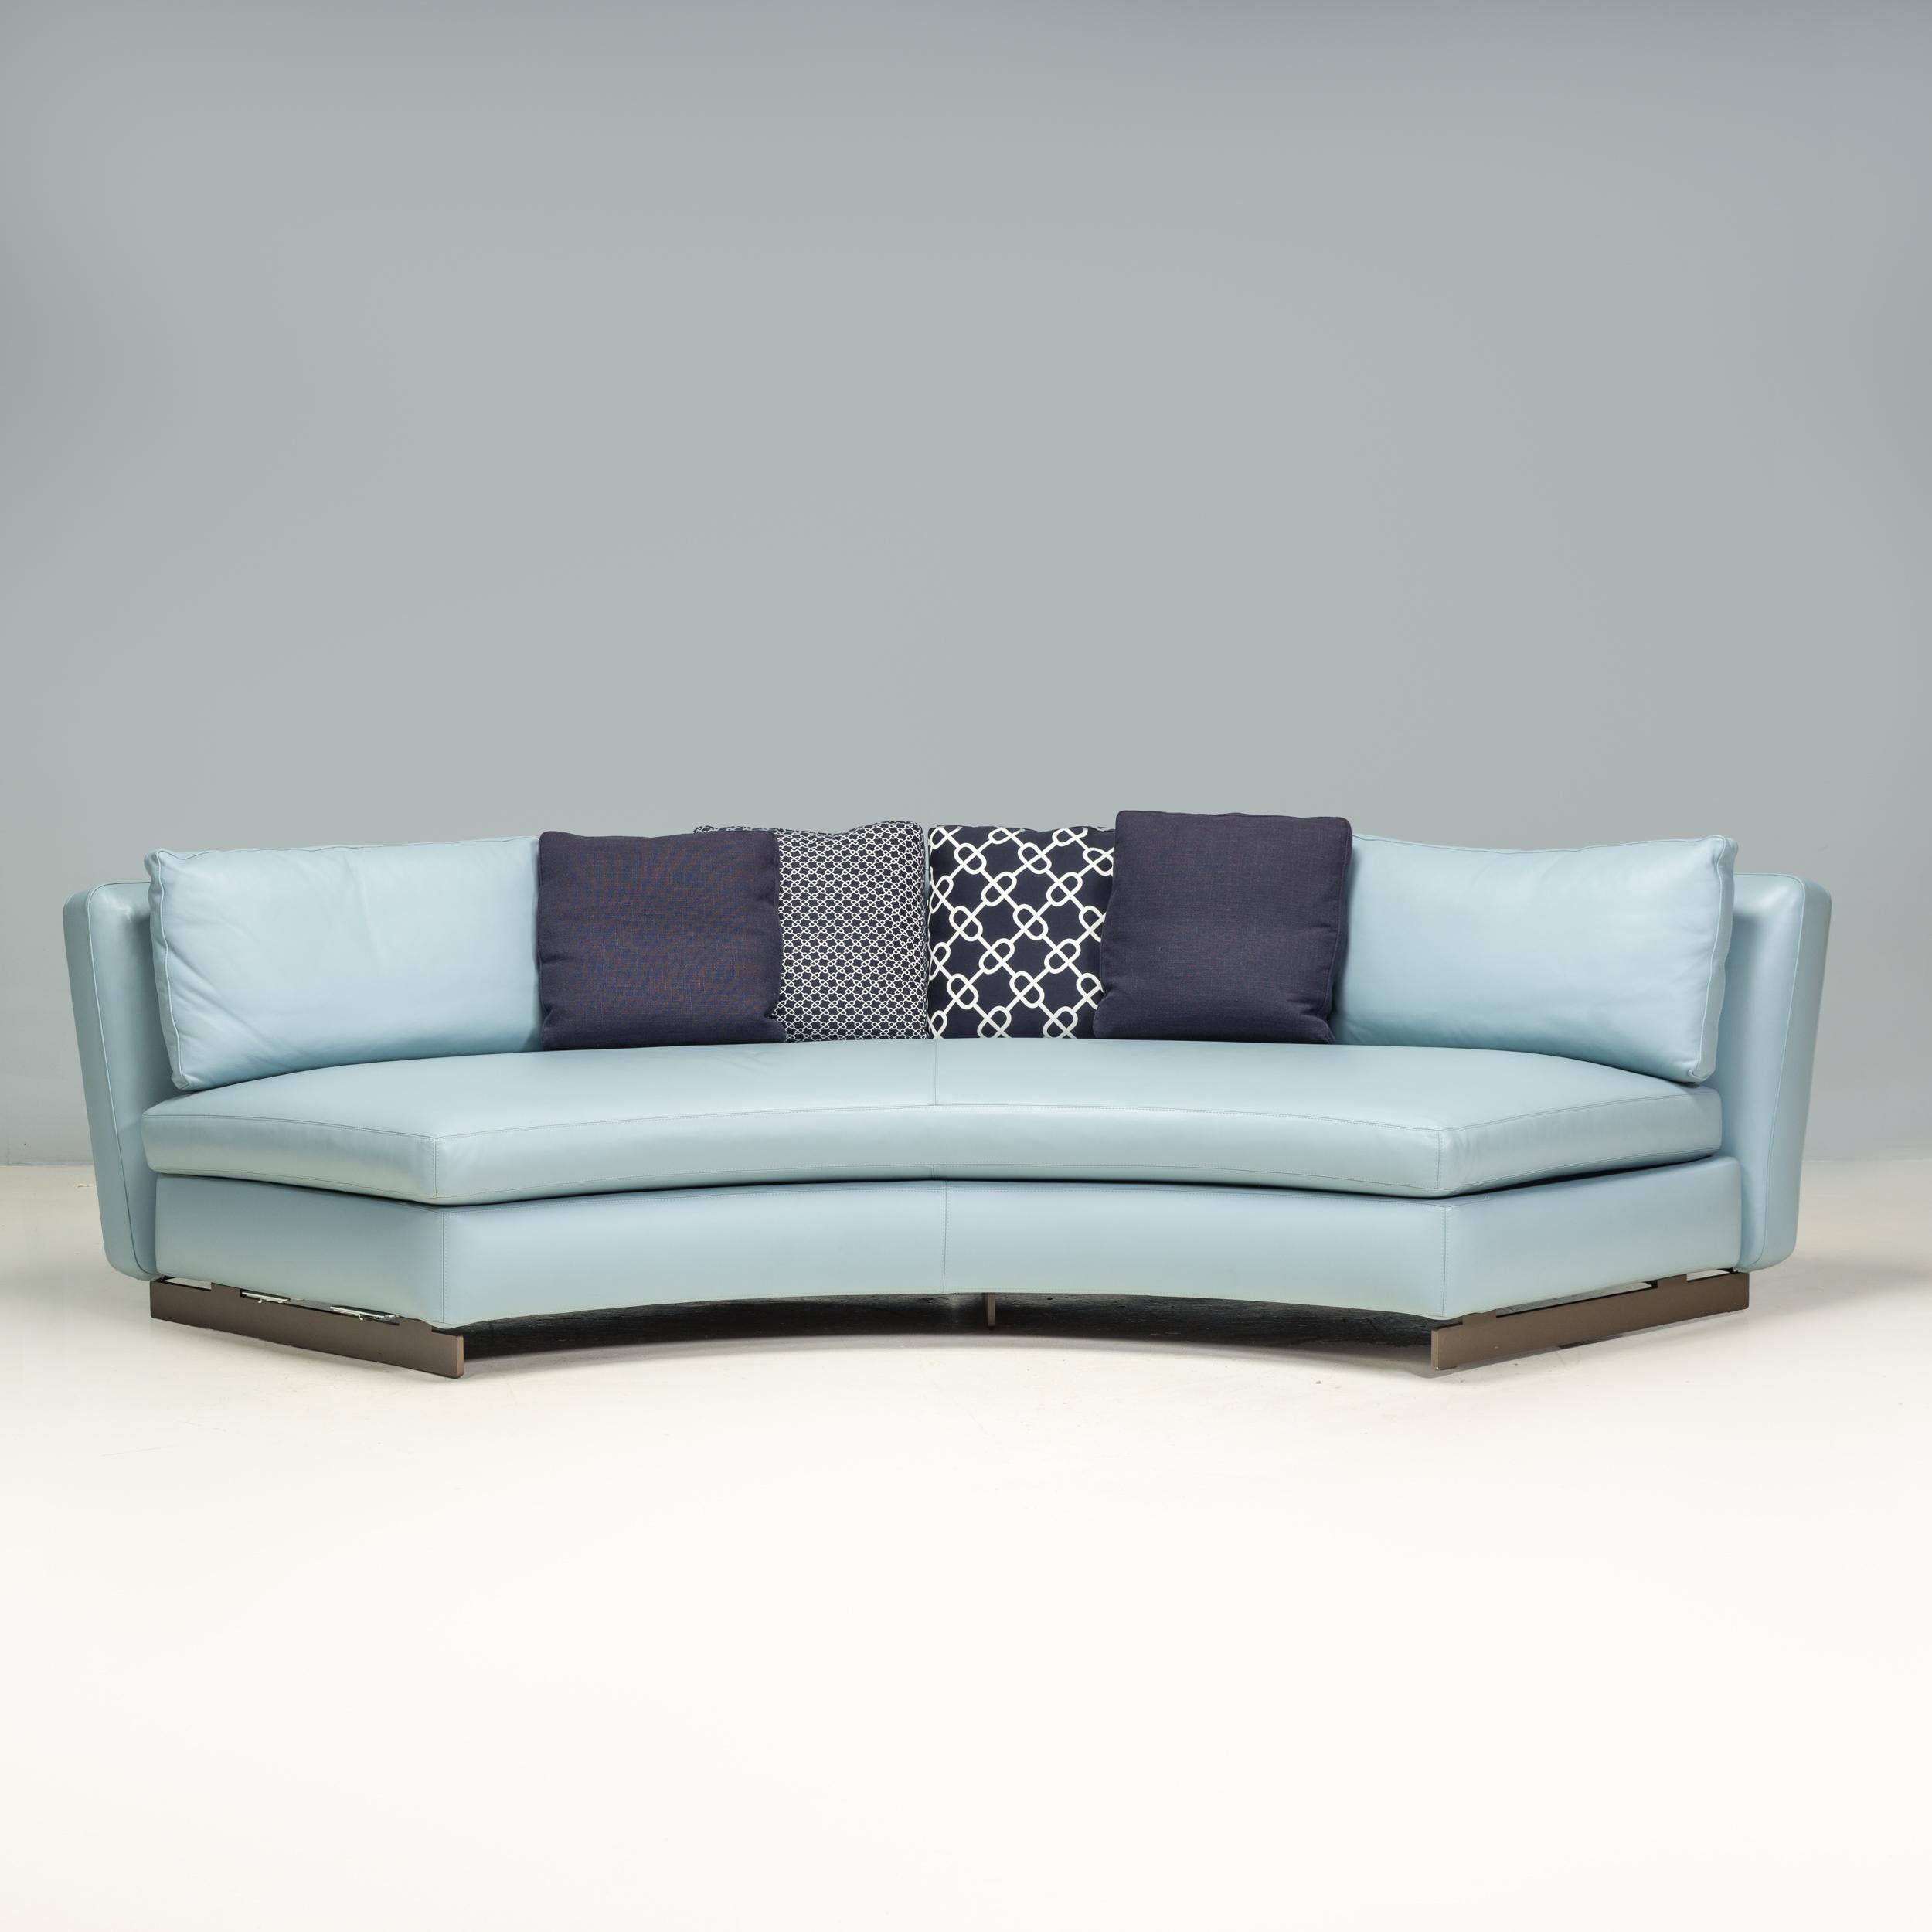 Das 2015 von Roldolfo Dordoni entworfene und von Minotti hergestellte niedrige Sofa Seymour ist ein fantastisches Beispiel für modernes italienisches Design.

Das Sofa mit seiner geschwungenen Silhouette hat eine halbkreisförmige Sitzfläche mit